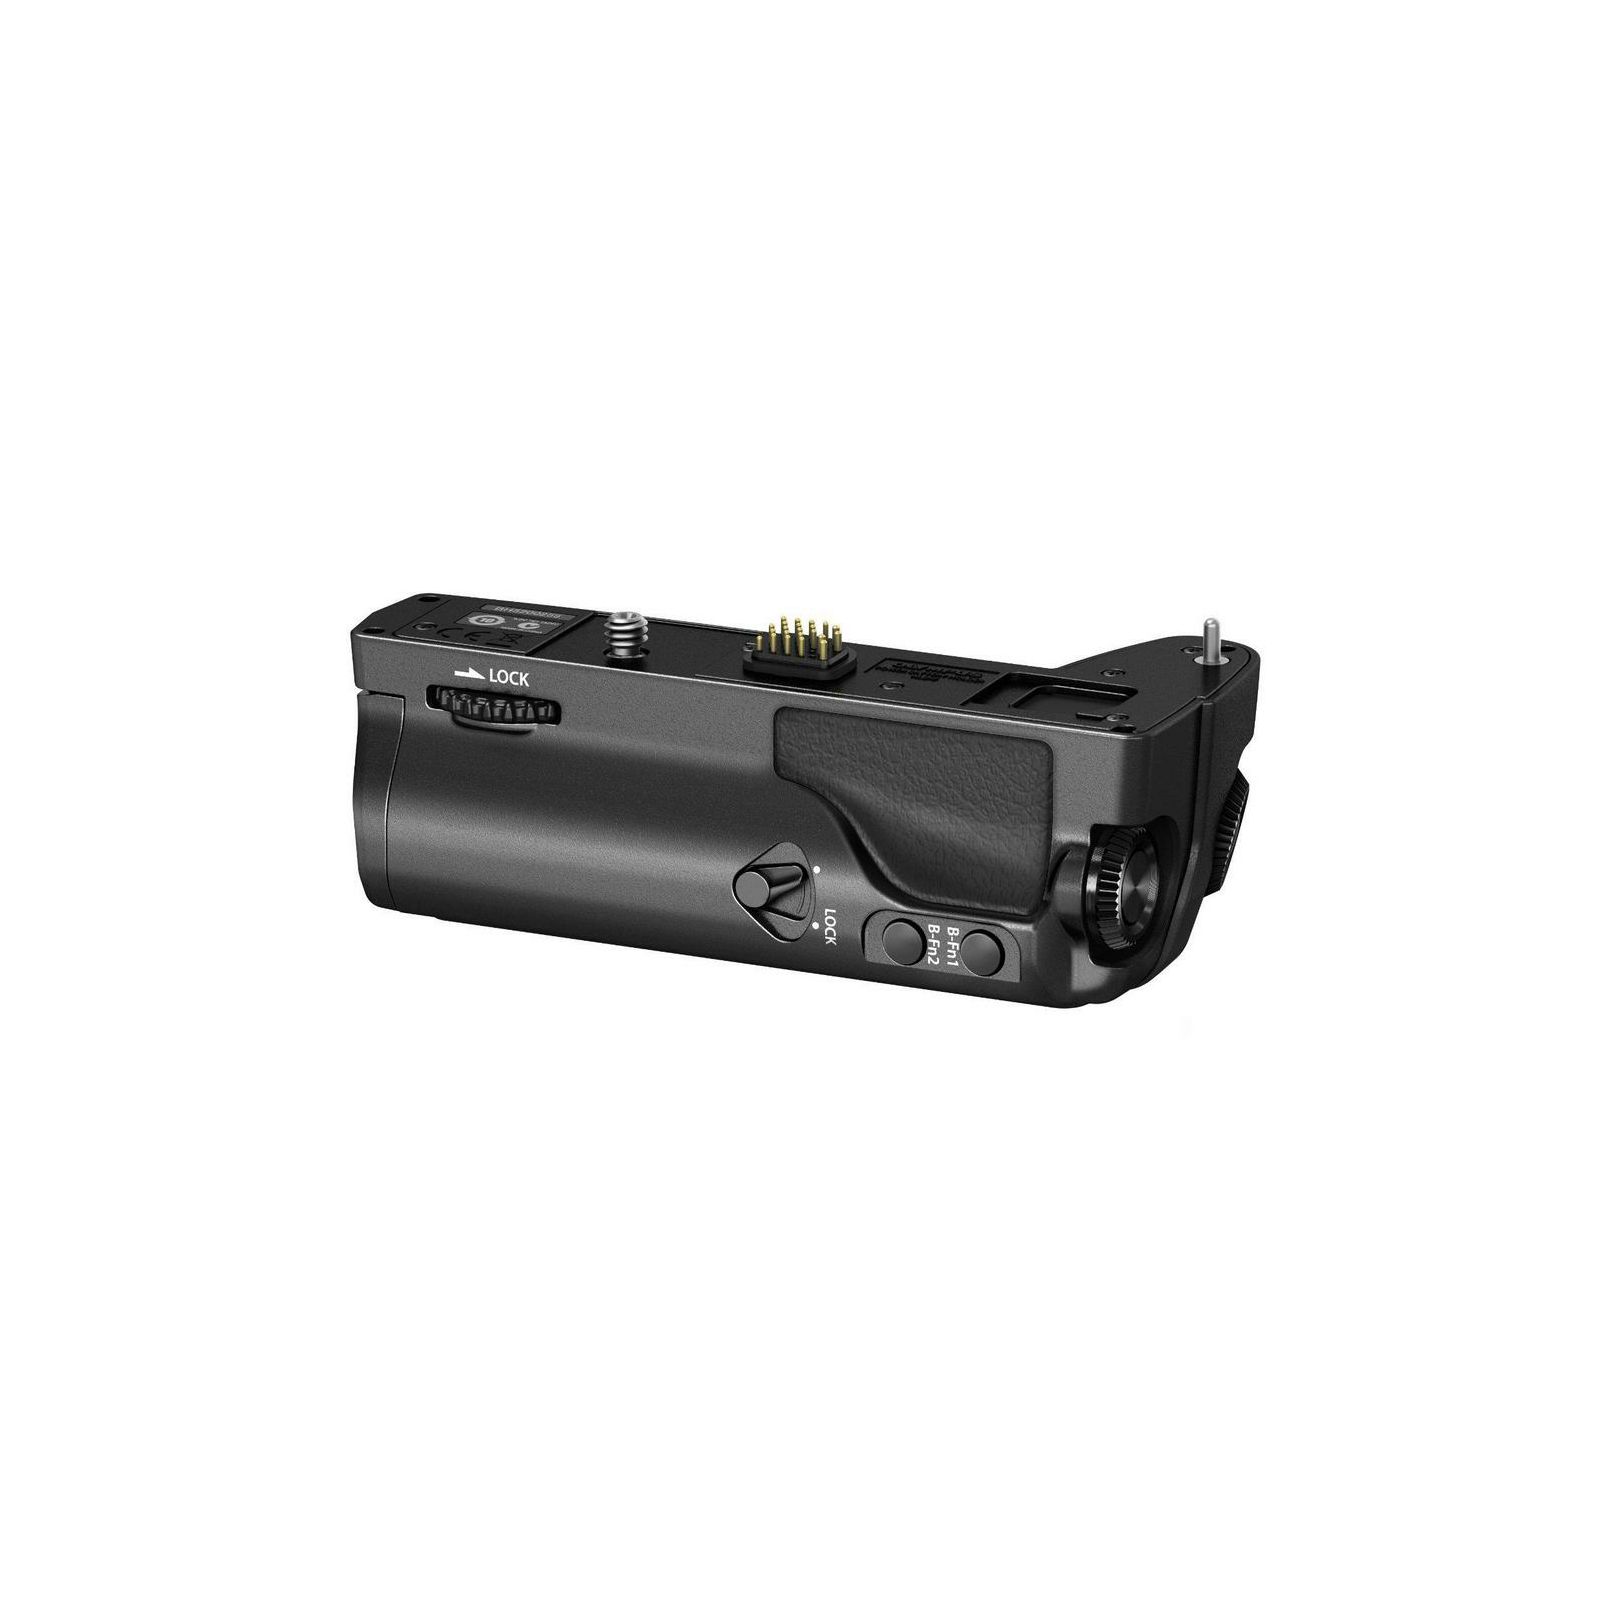 Olympus HLD-7 Power Battery Holder for E-M1 držač baterije V328140BE000